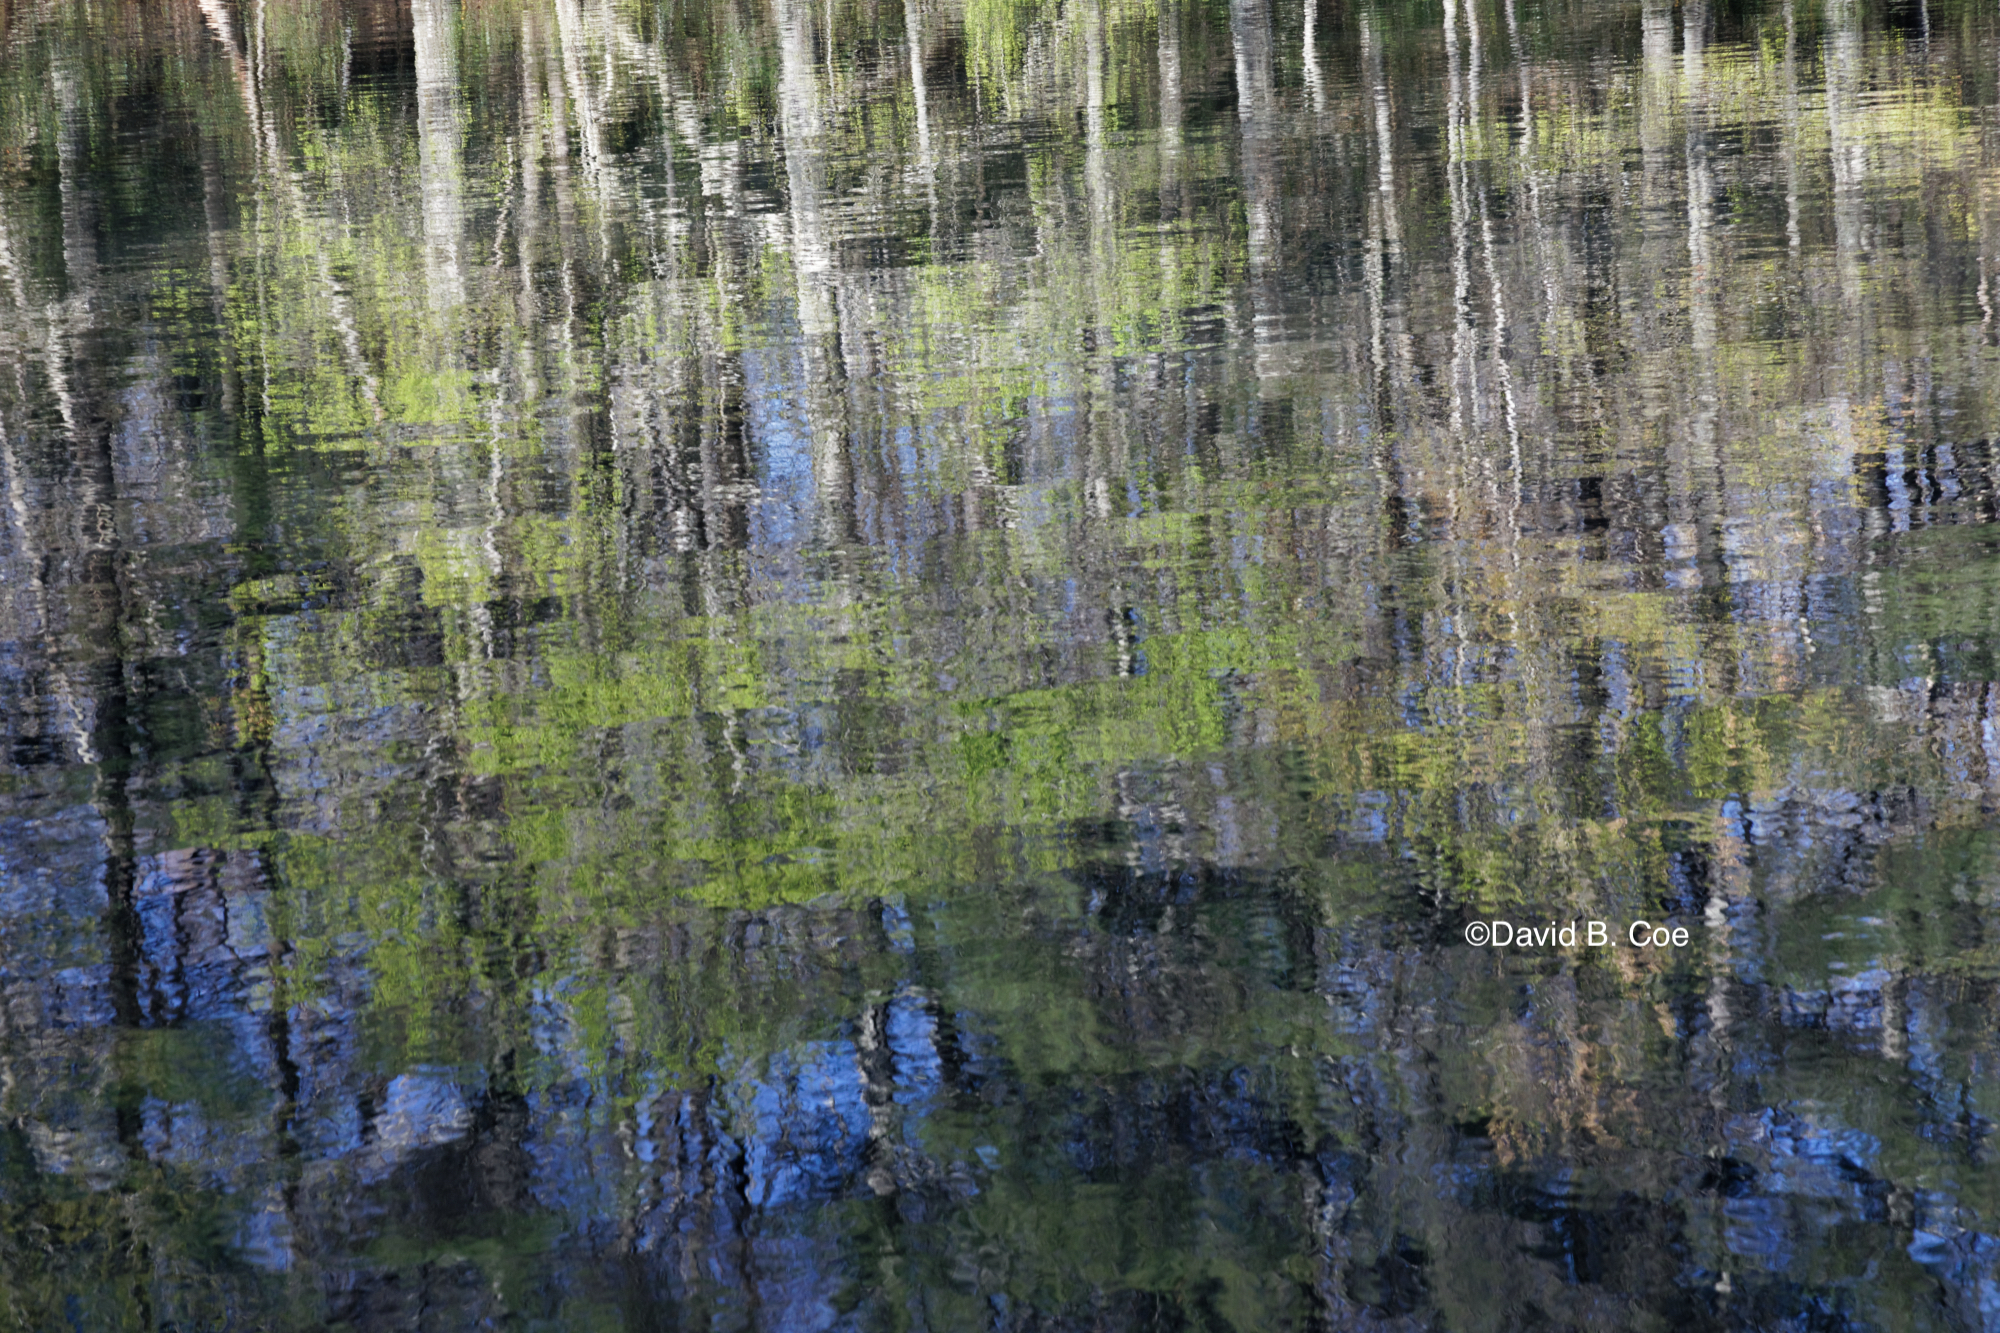 Lake Reflections, Spring, by David B. Coe